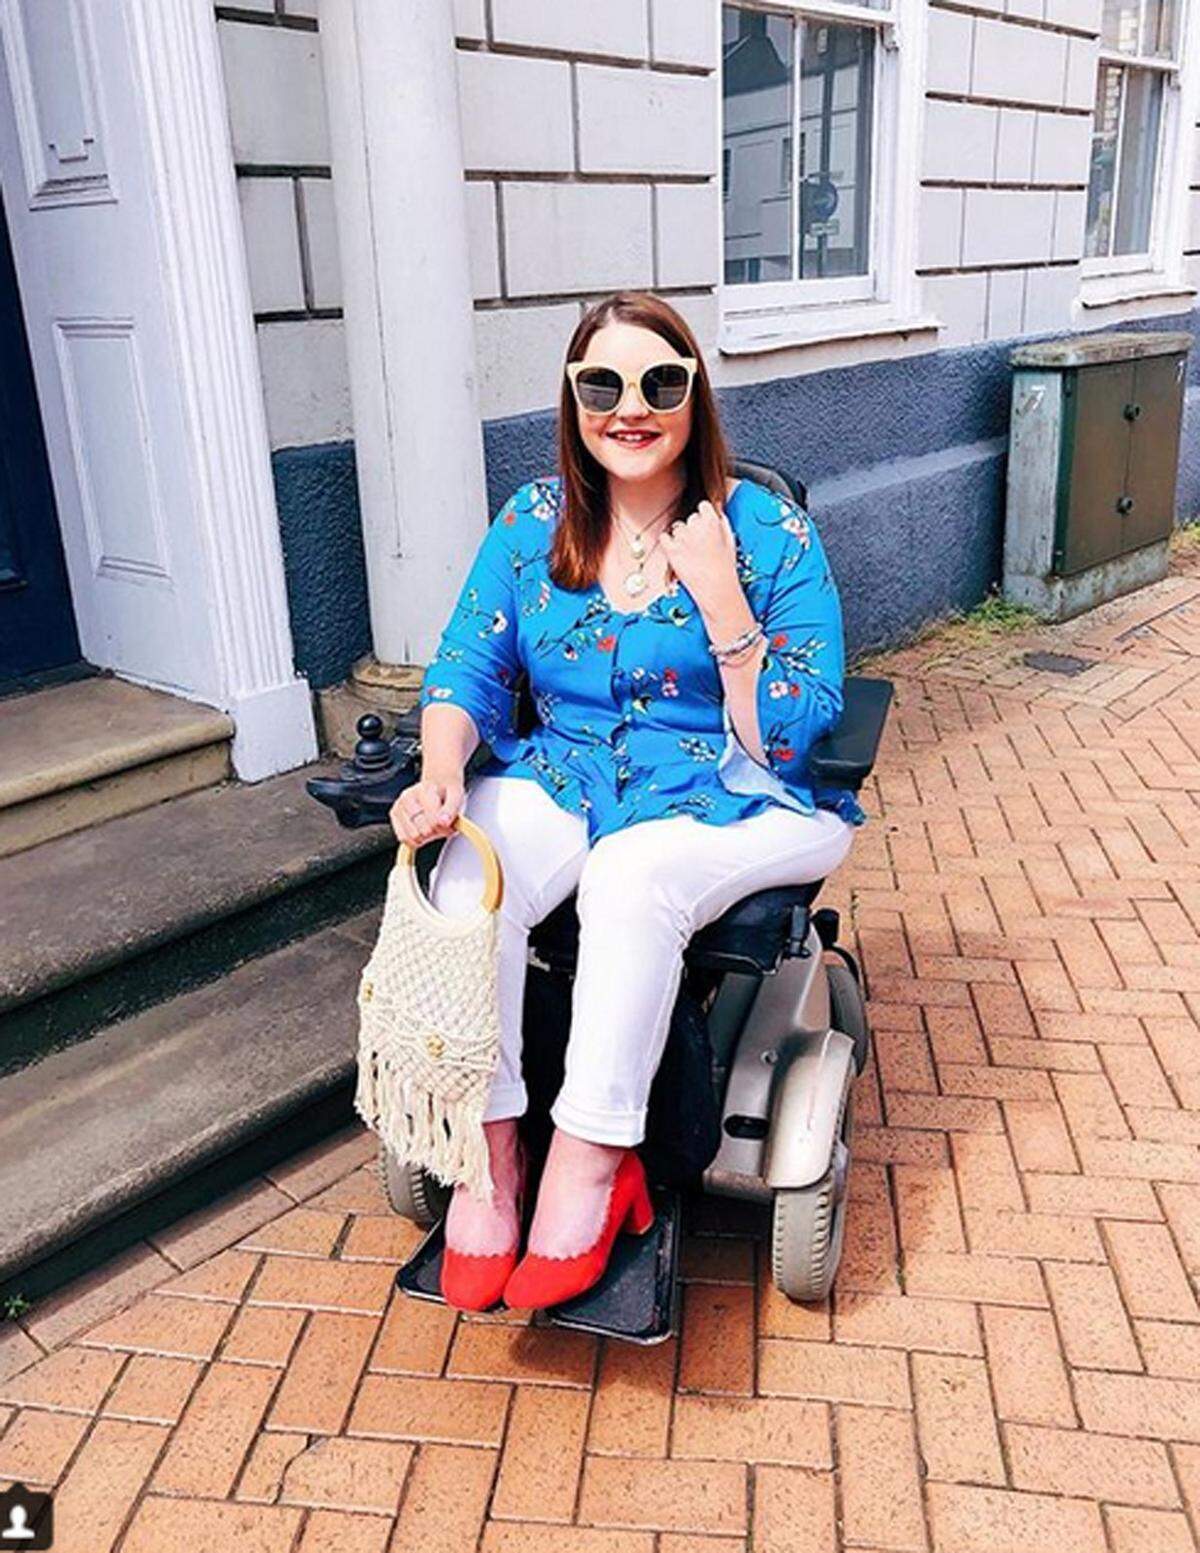 Die Modeindustrie hat sich in den vergangenen Jahren bemüht, diverser und inklusiver zu werden. Bei der Repräsentation von behinderten Menschen besteht aber trotz Projekten wie Adaptive Fashion von Tommy Hilfiger aber noch Nachholbedarf. Das will Sophie Bradbury-Cox mit ihrem Instagram-Account ändern.